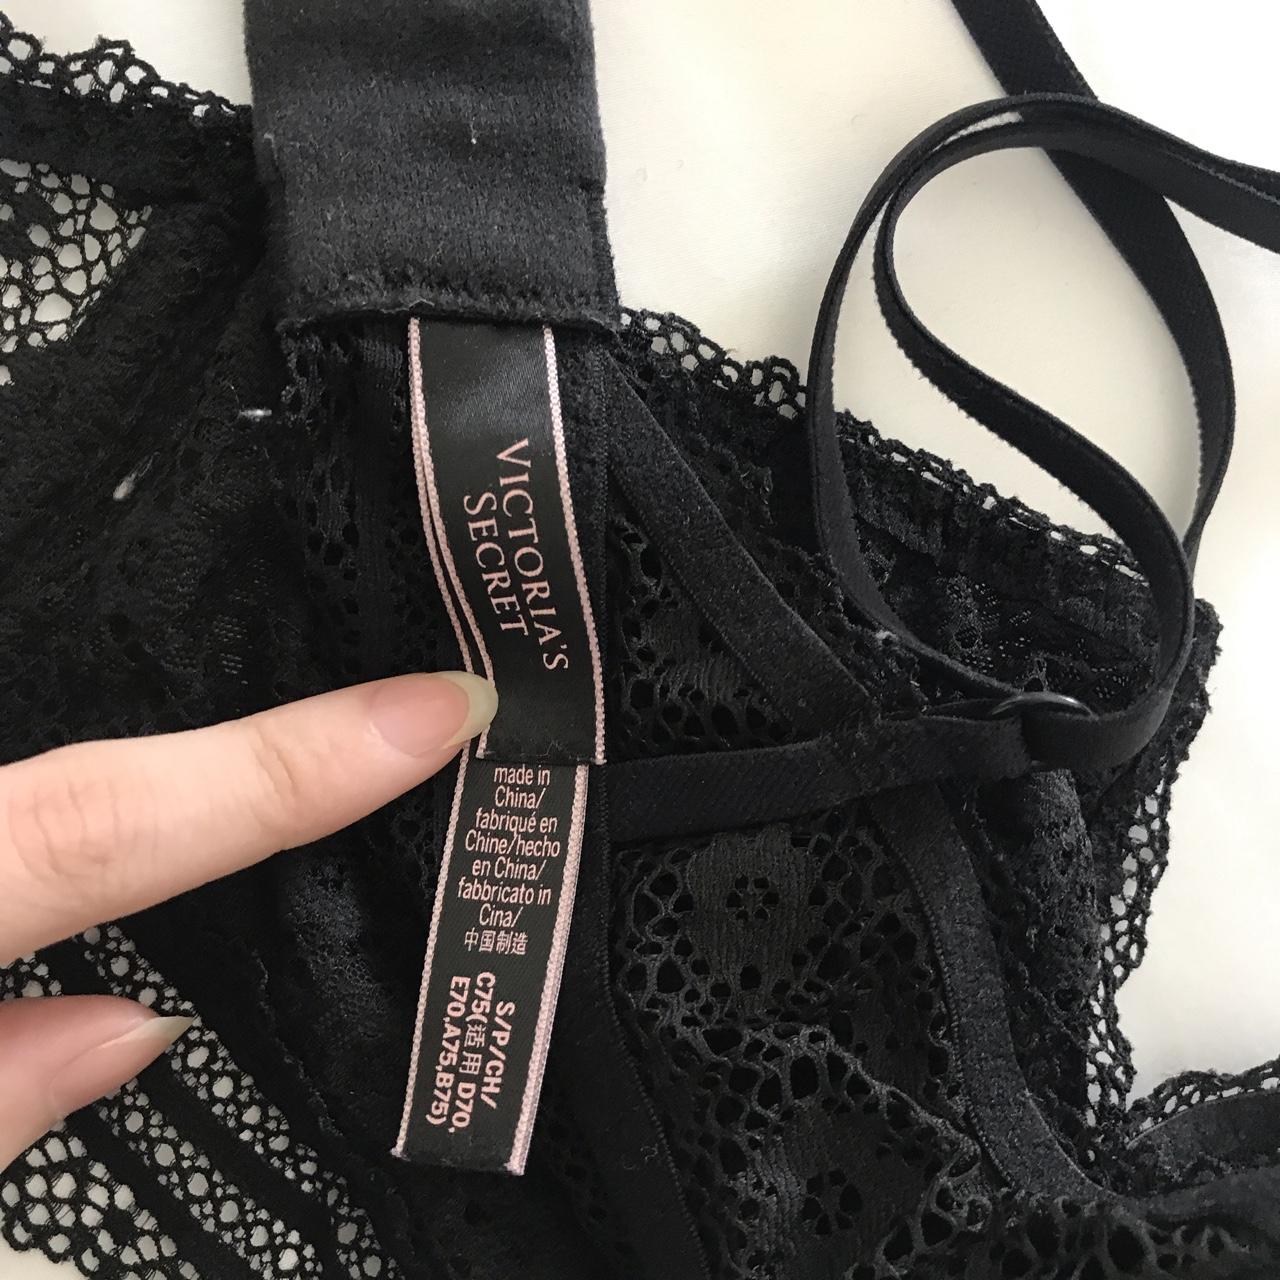 black lace Victoria’s Secret bralette - Depop